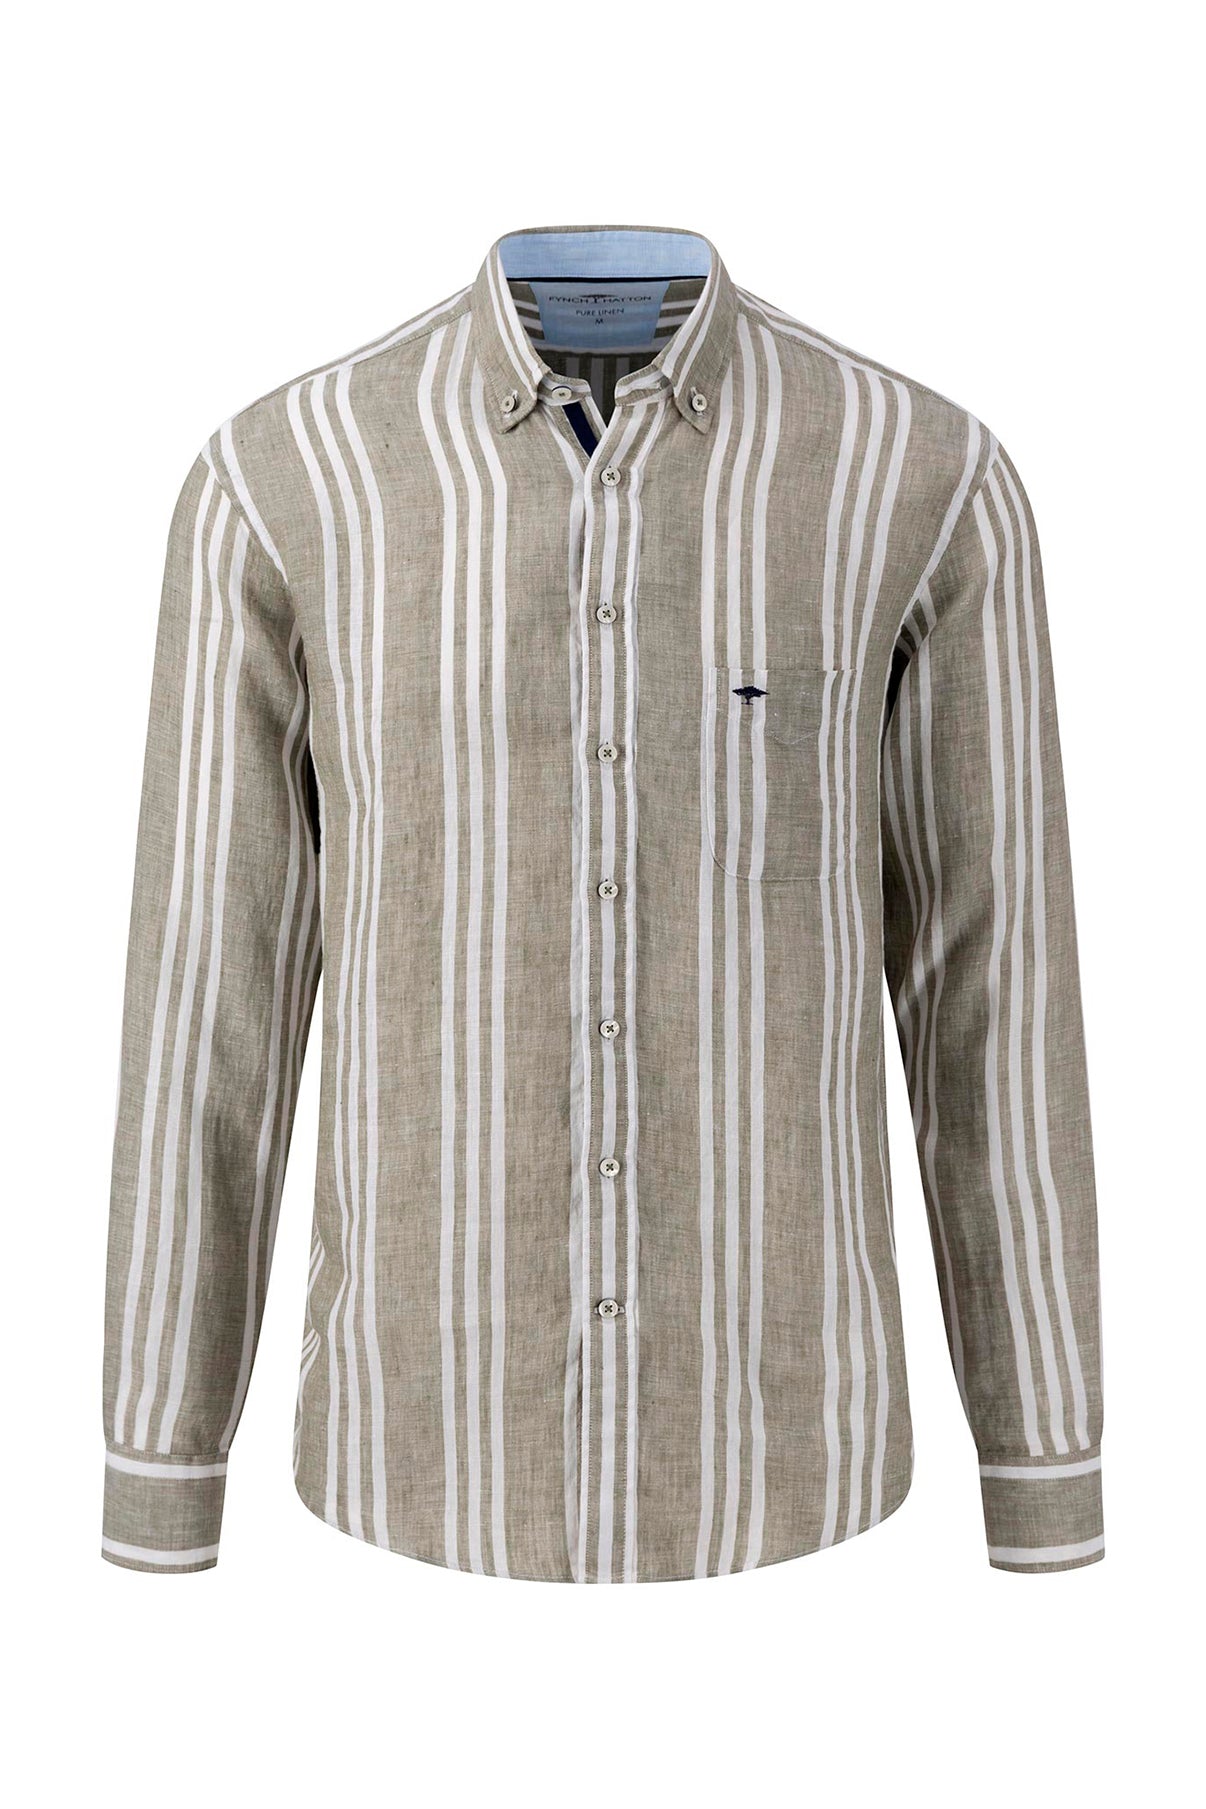 FYNCH-HATTON Skjorte LS Pure Linen Stripes